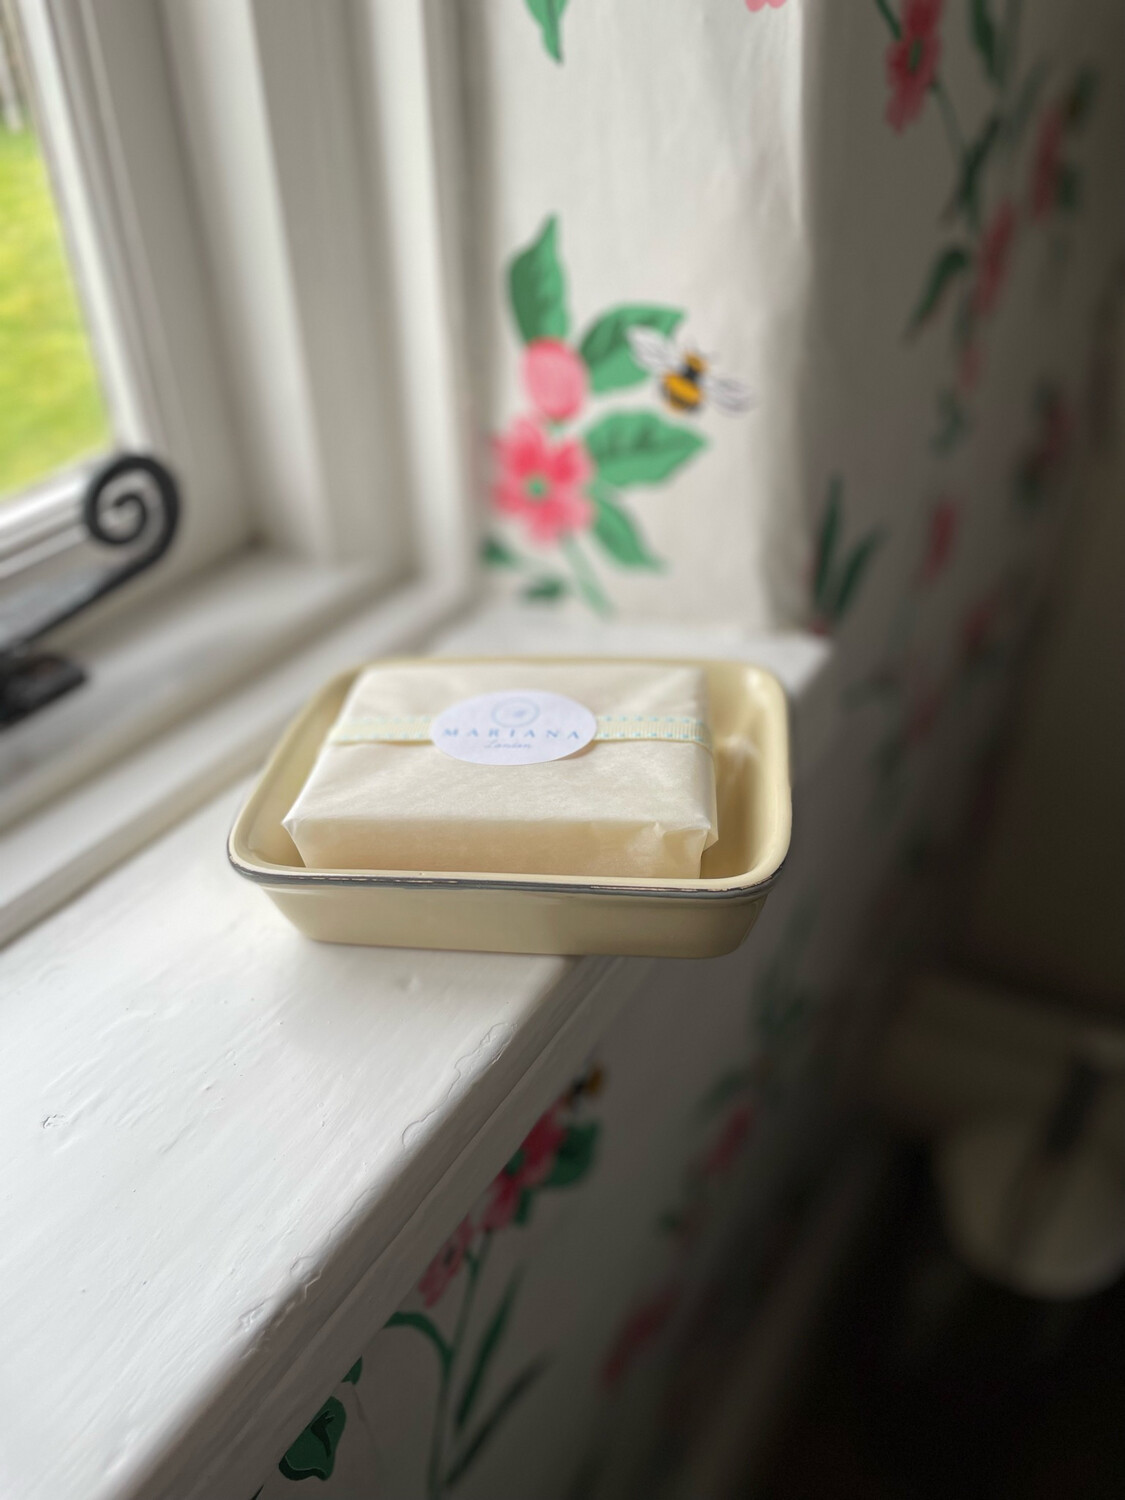 Cream Ceramic Soap Dish and Bath Soap (110g)